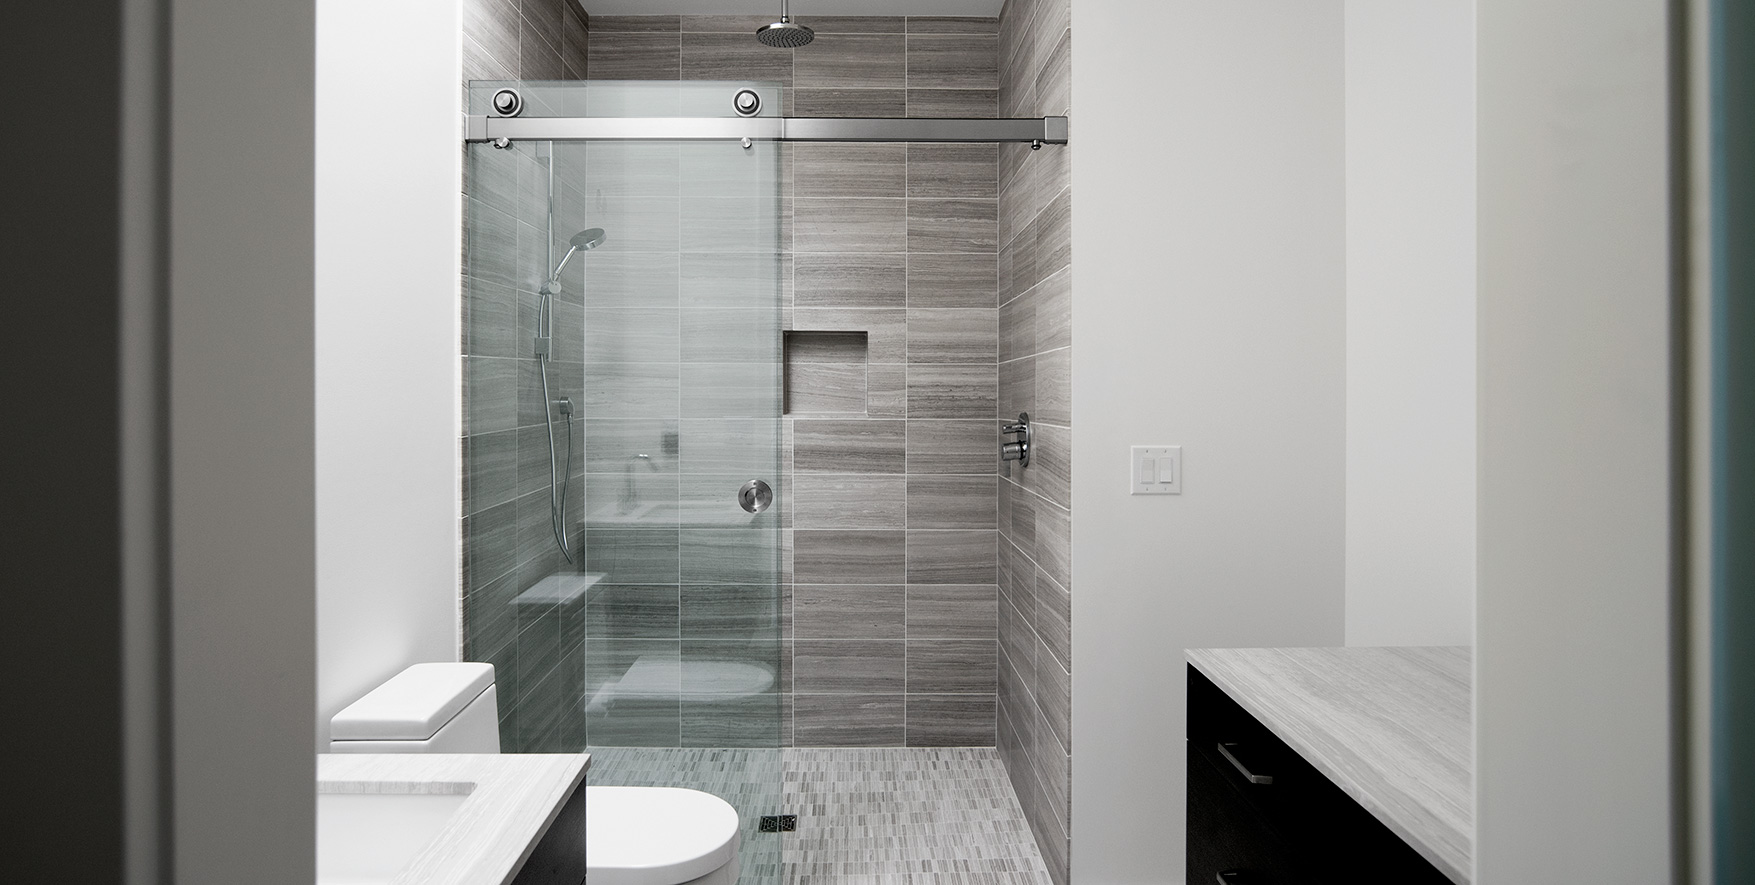 Frameless shower door system in Brushed Stainless finish.